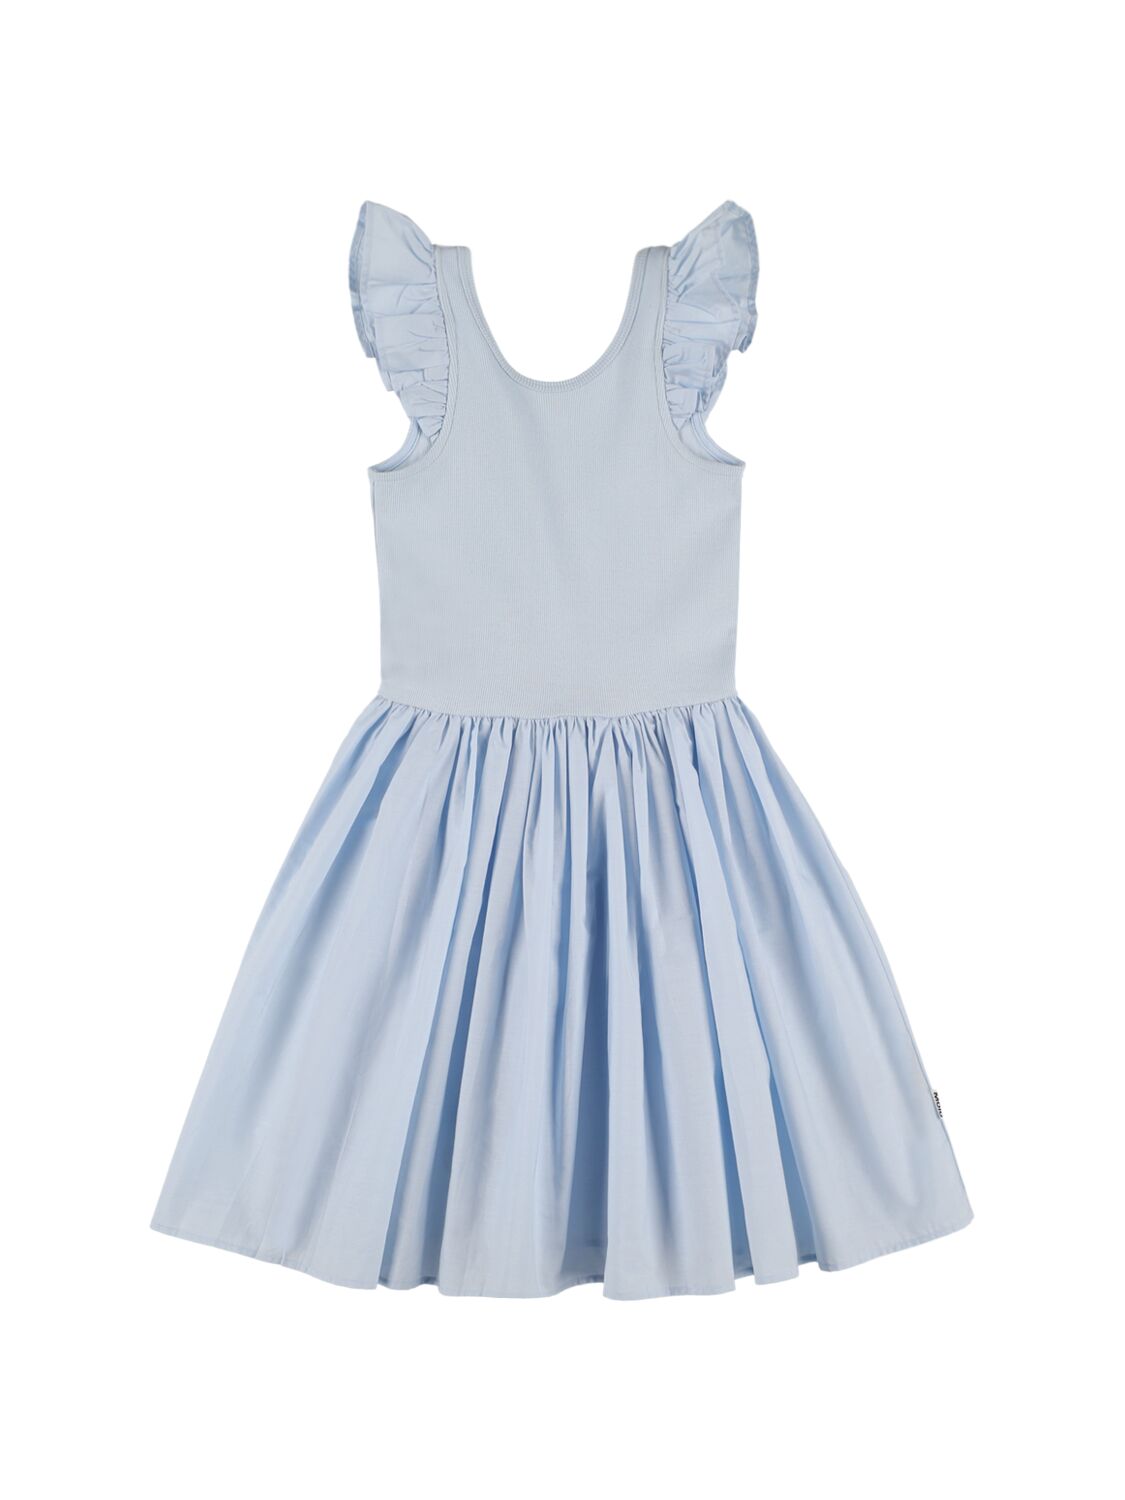 Molo Kids' Cotton Jersey & Poplin Dress In Light Blue